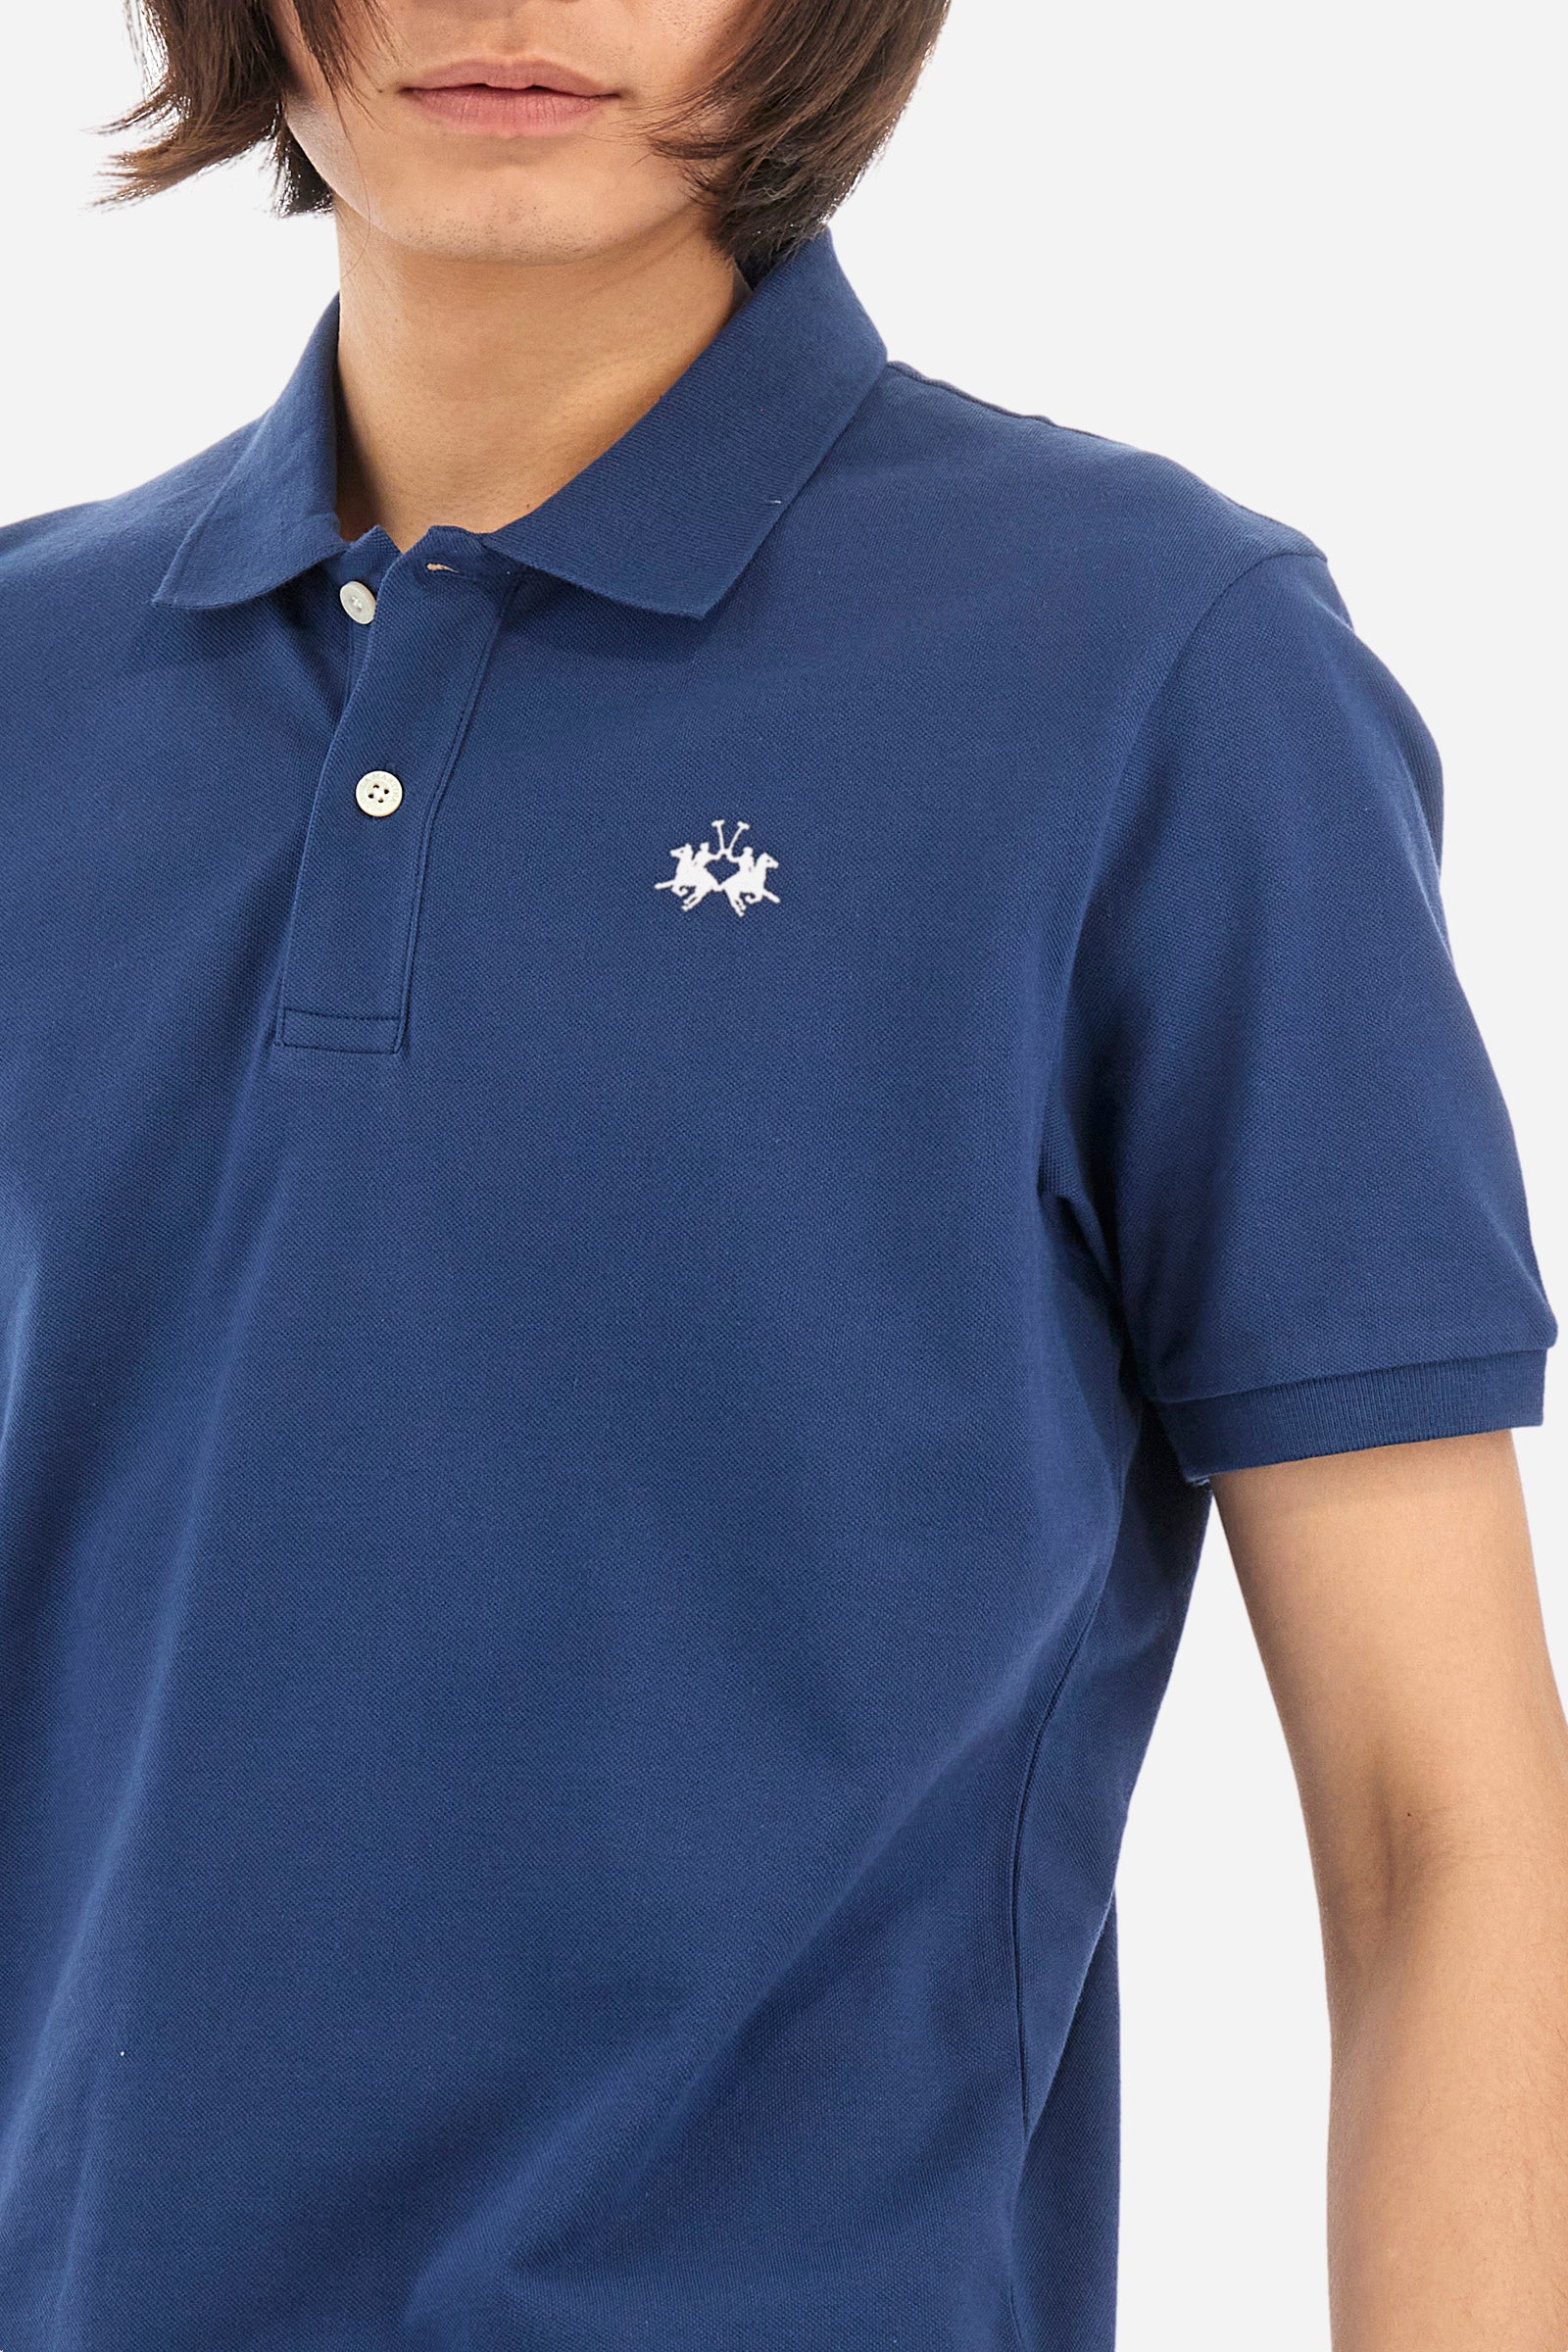 Kurzarm-Poloshirt mit geradem Schnitt für Herren - Tex